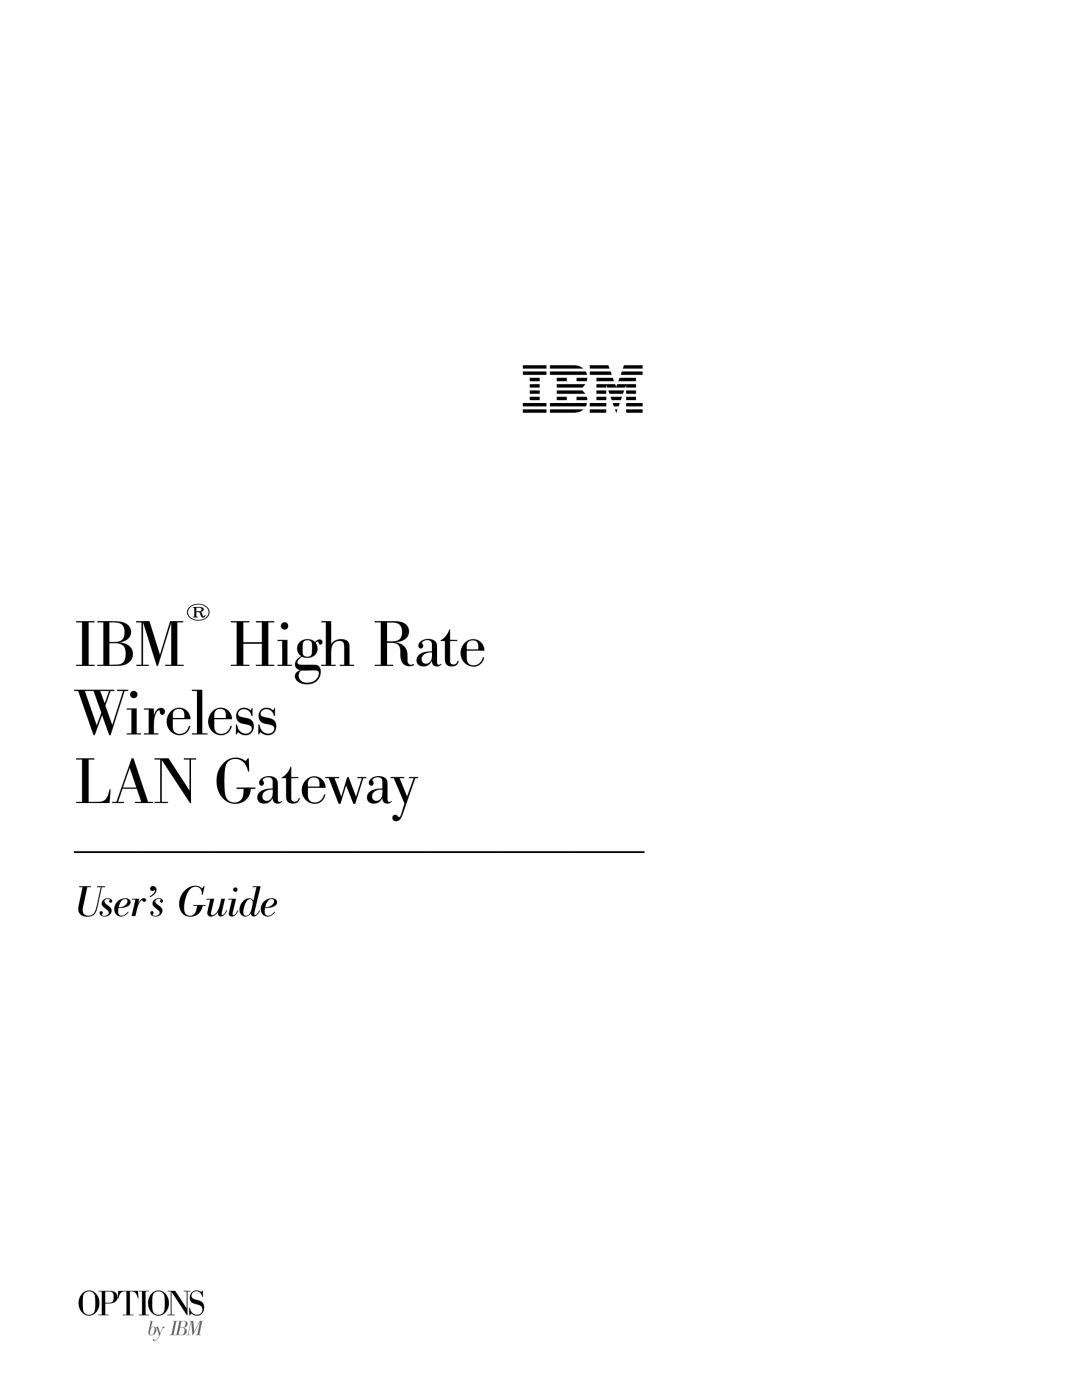 IBM 22P6415 manual IBM High Rate Wireless LAN Gateway, User’s Guide, Options, by IBM 